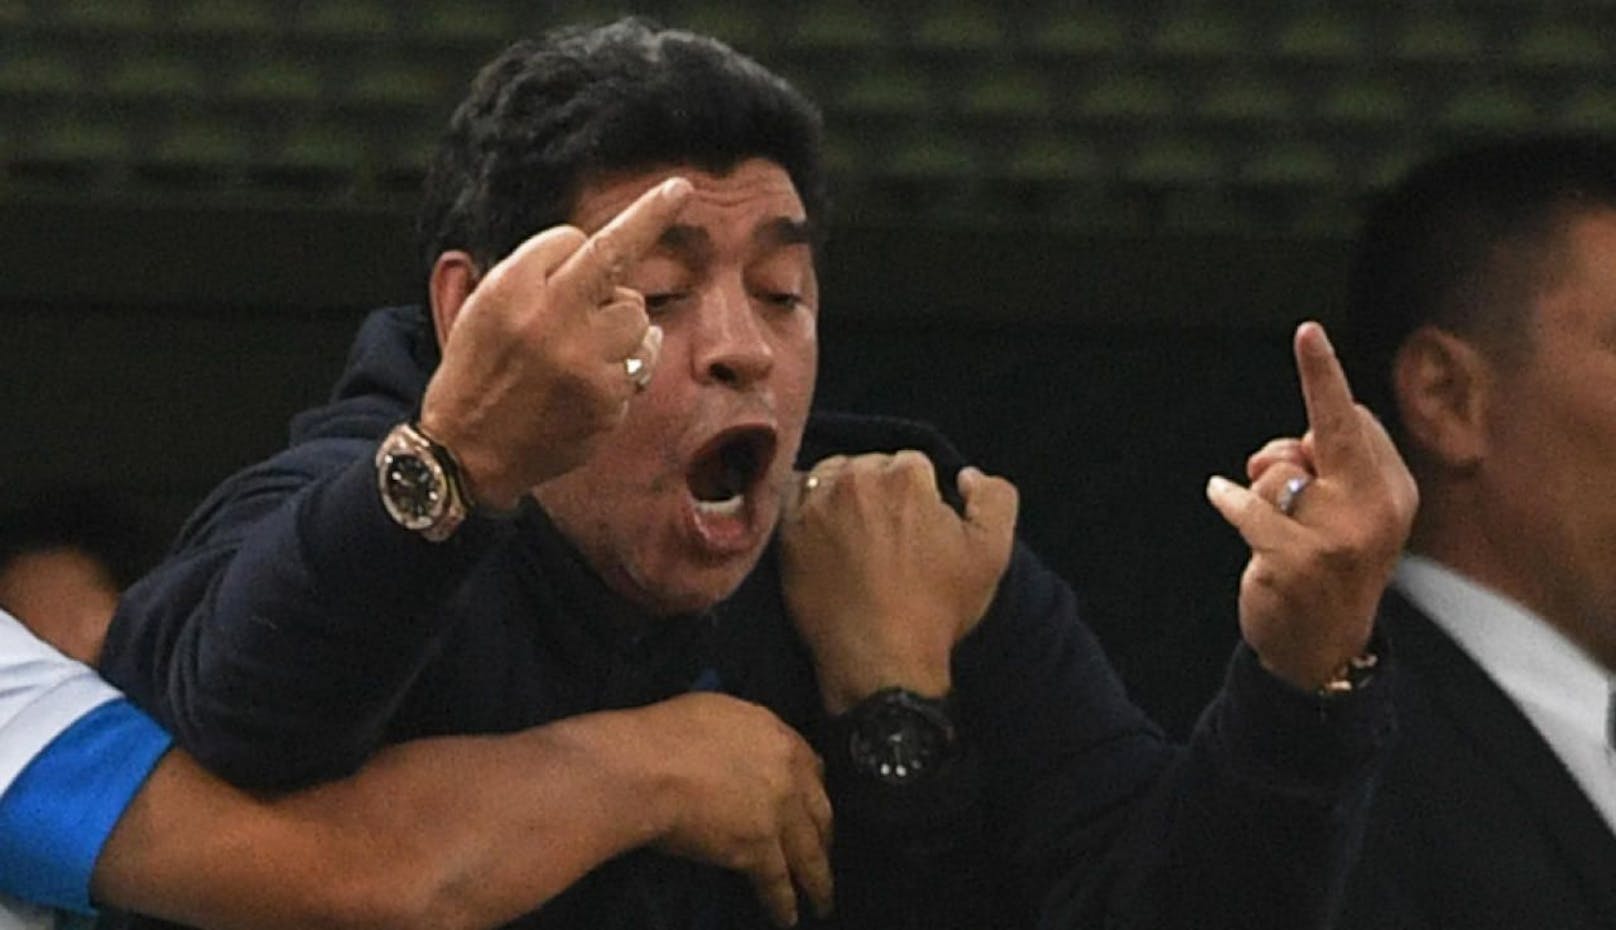 Diego Maradona zeigte sich in Russland von seiner hässlichen Seite.
